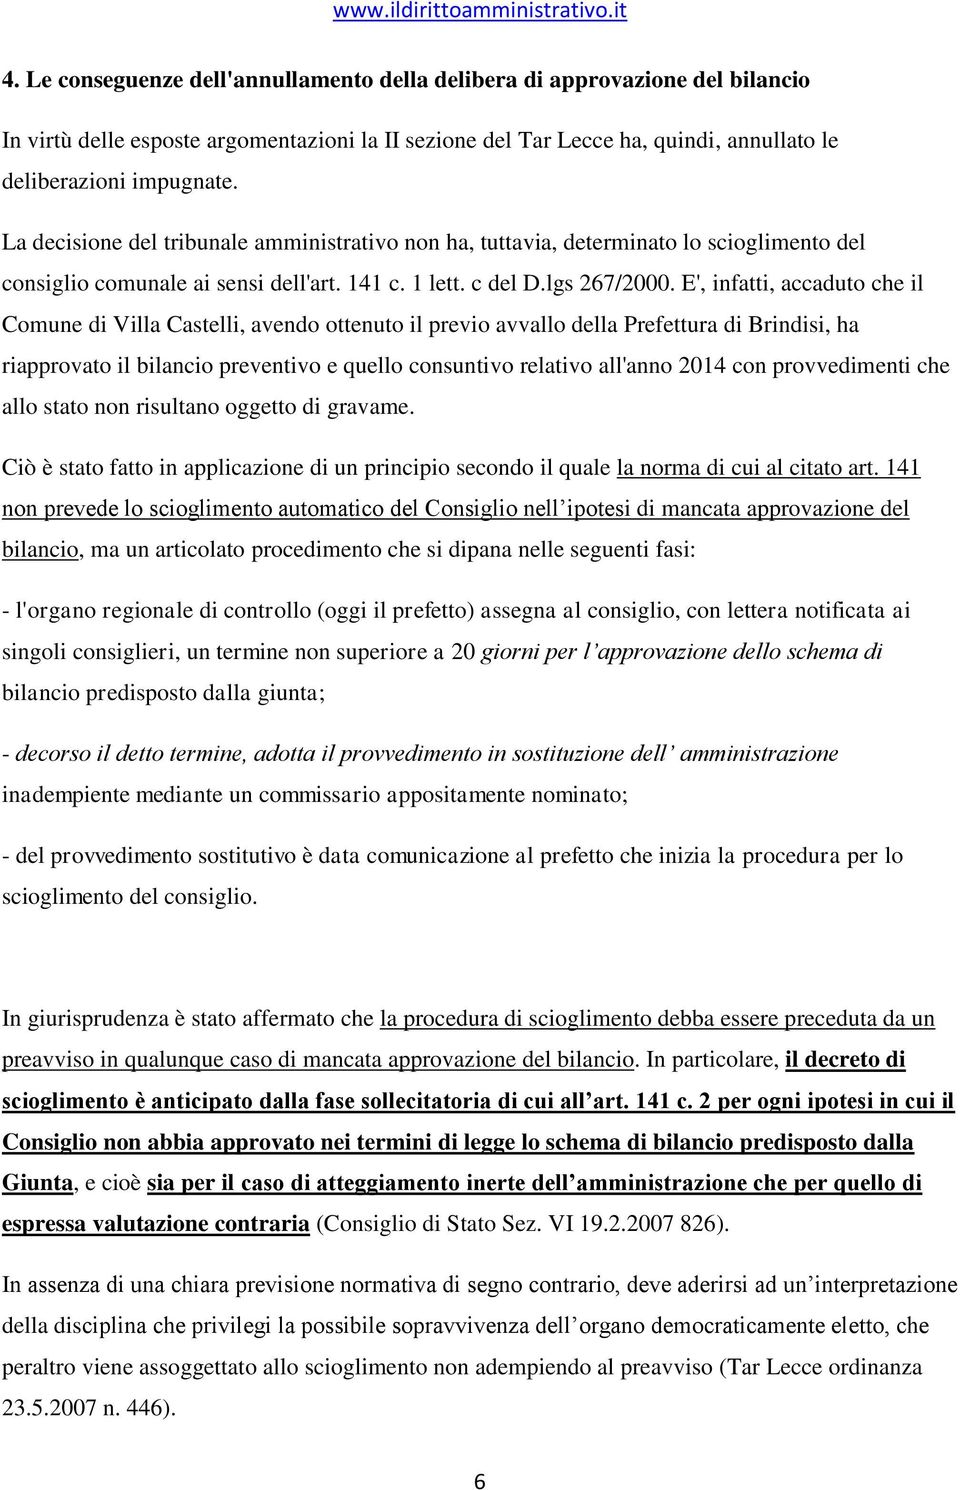 E', infatti, accaduto che il Comune di Villa Castelli, avendo ottenuto il previo avvallo della Prefettura di Brindisi, ha riapprovato il bilancio preventivo e quello consuntivo relativo all'anno 2014